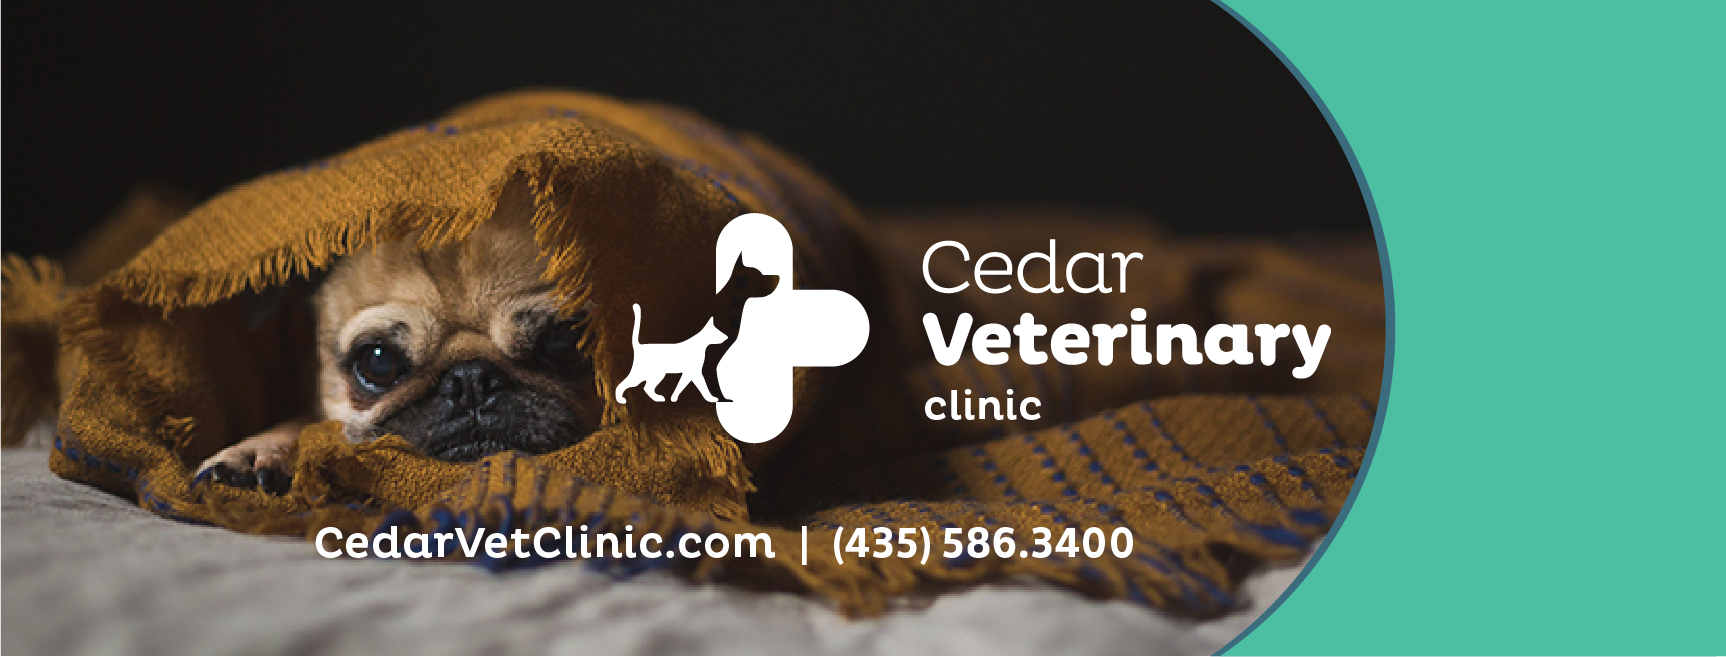 Cedar Veterinary Clinic